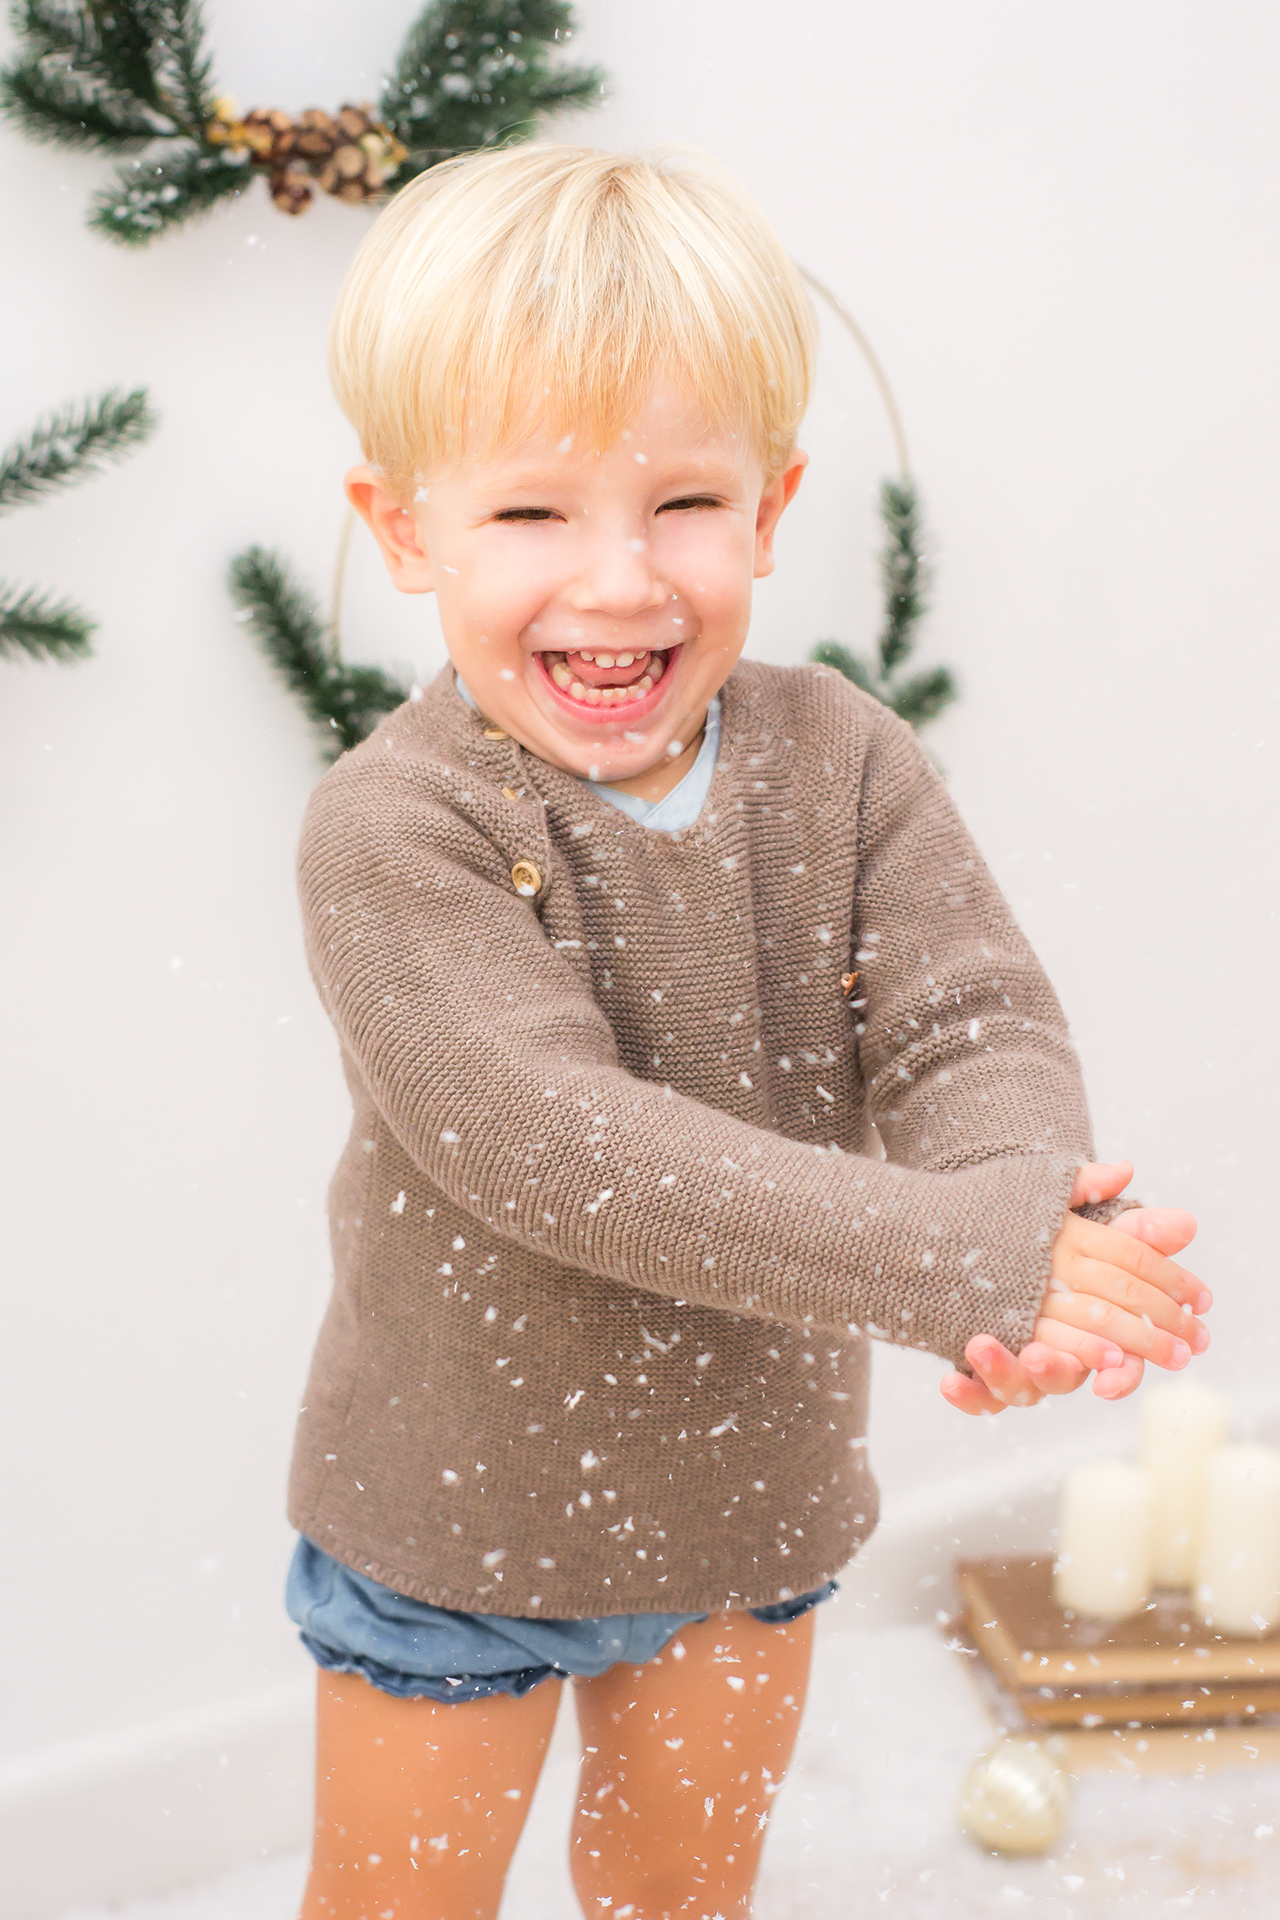 Sesión de fotos navideñas que refleja la alegría y el espíritu festivo de la niñez. 